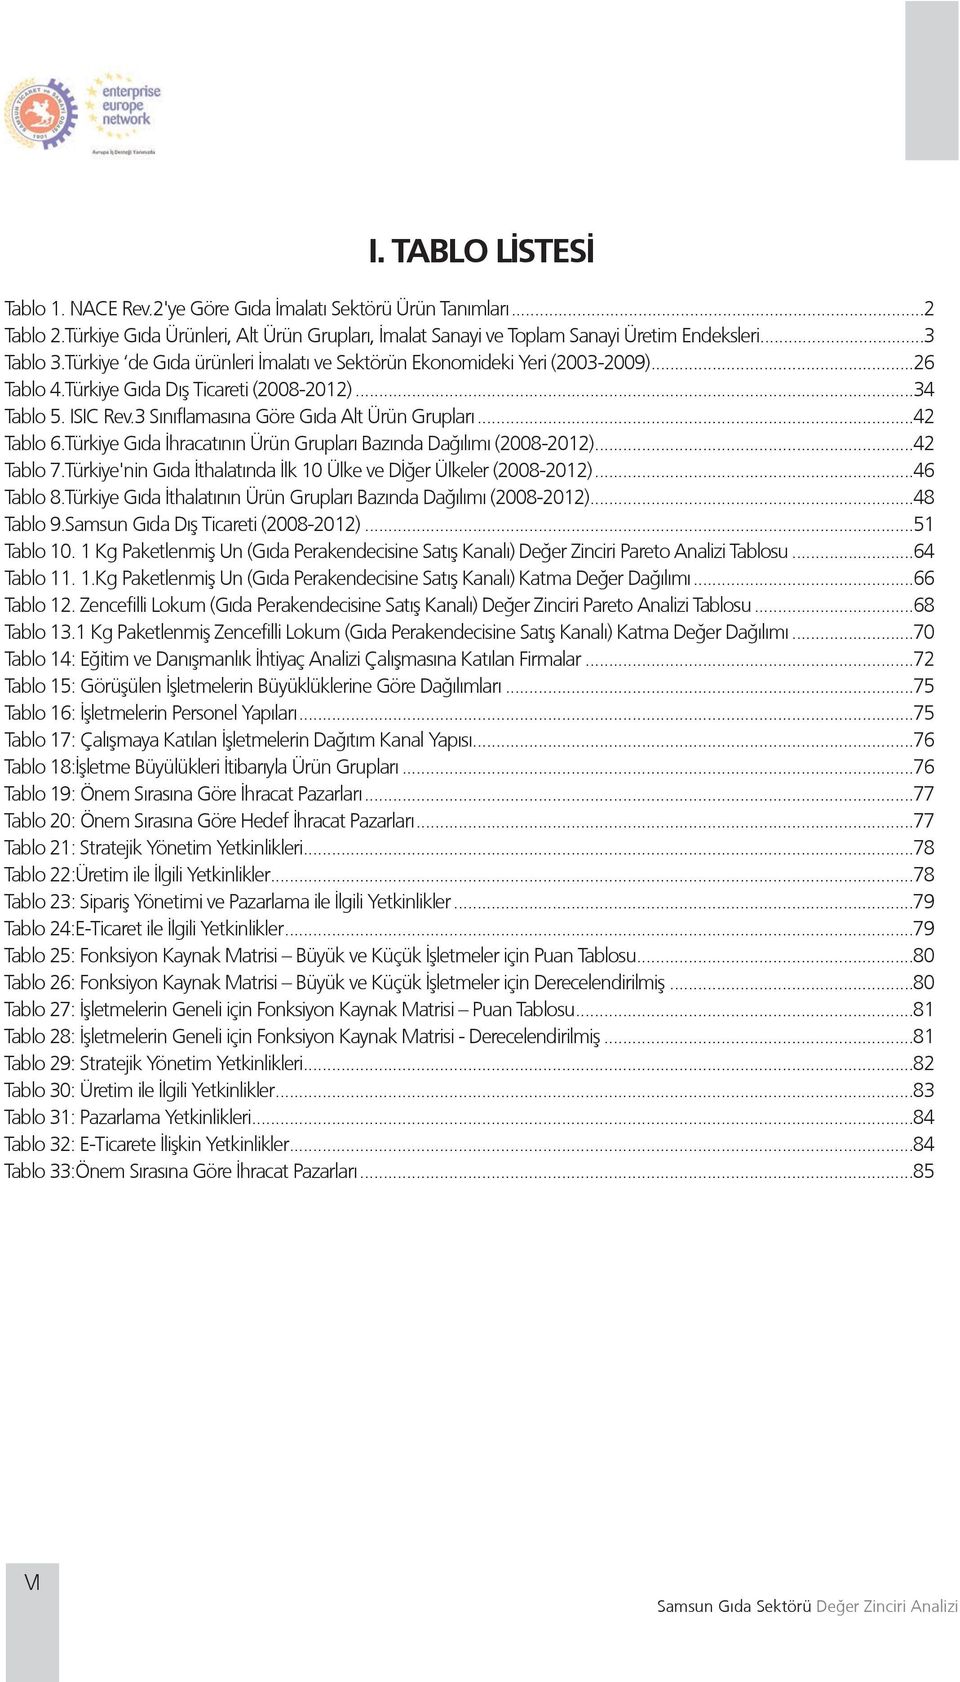 Türkiye Gıda İhracatının Grupları Bazında Dağılımı (2008-2012)...42 Tablo 7.Türkiye'nin Gıda İthalatında İlk 10 Ülke ve Dİğer Ülkeler (2008-2012)...46 Tablo 8.